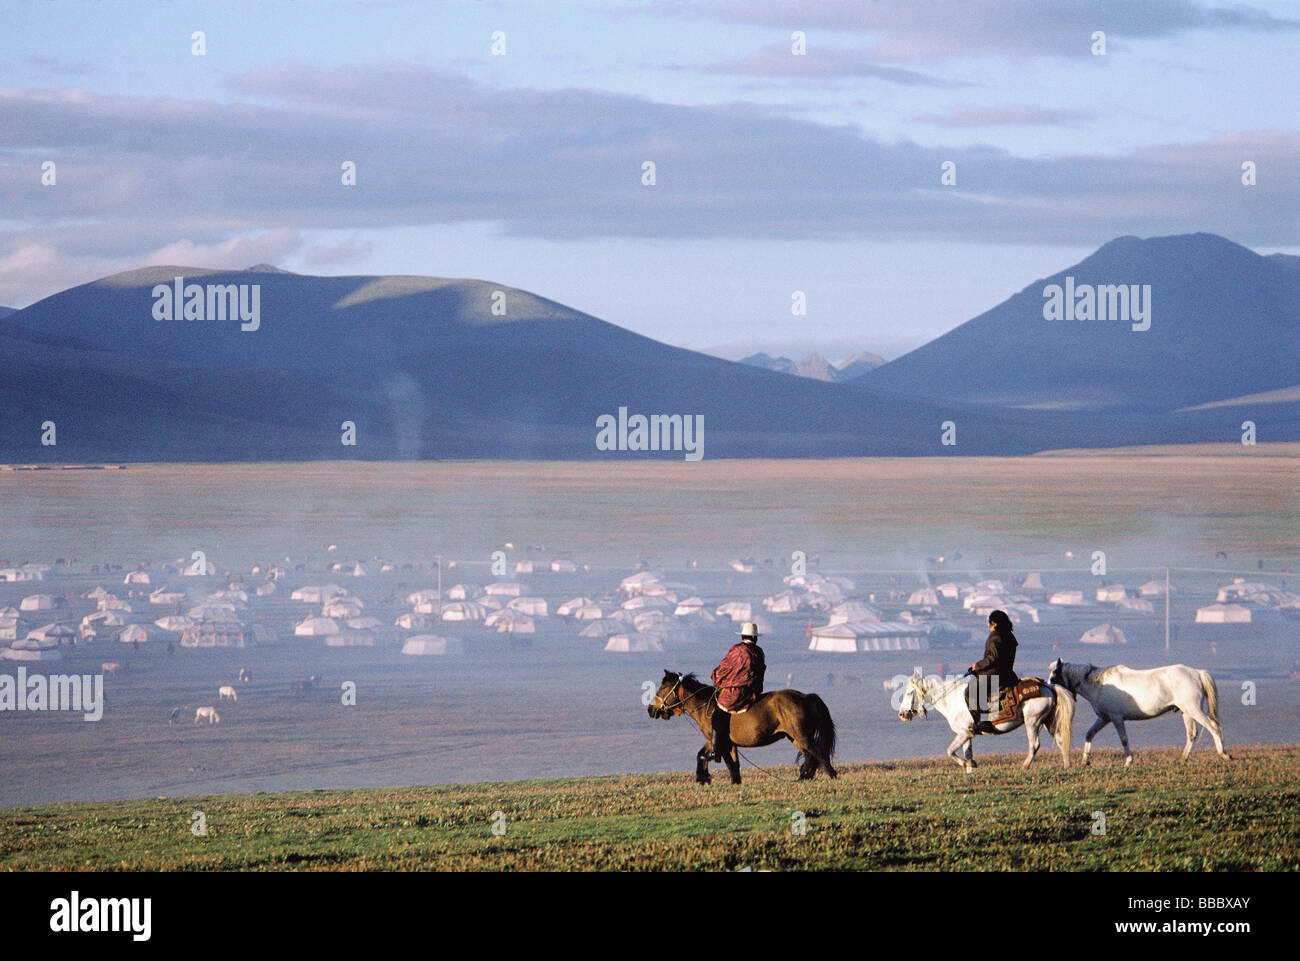 Chine, du Sichuan (Sichuan), Kham, région de l'été Festival nomade, horseman tôt le matin près de la ville de tentes. Banque D'Images